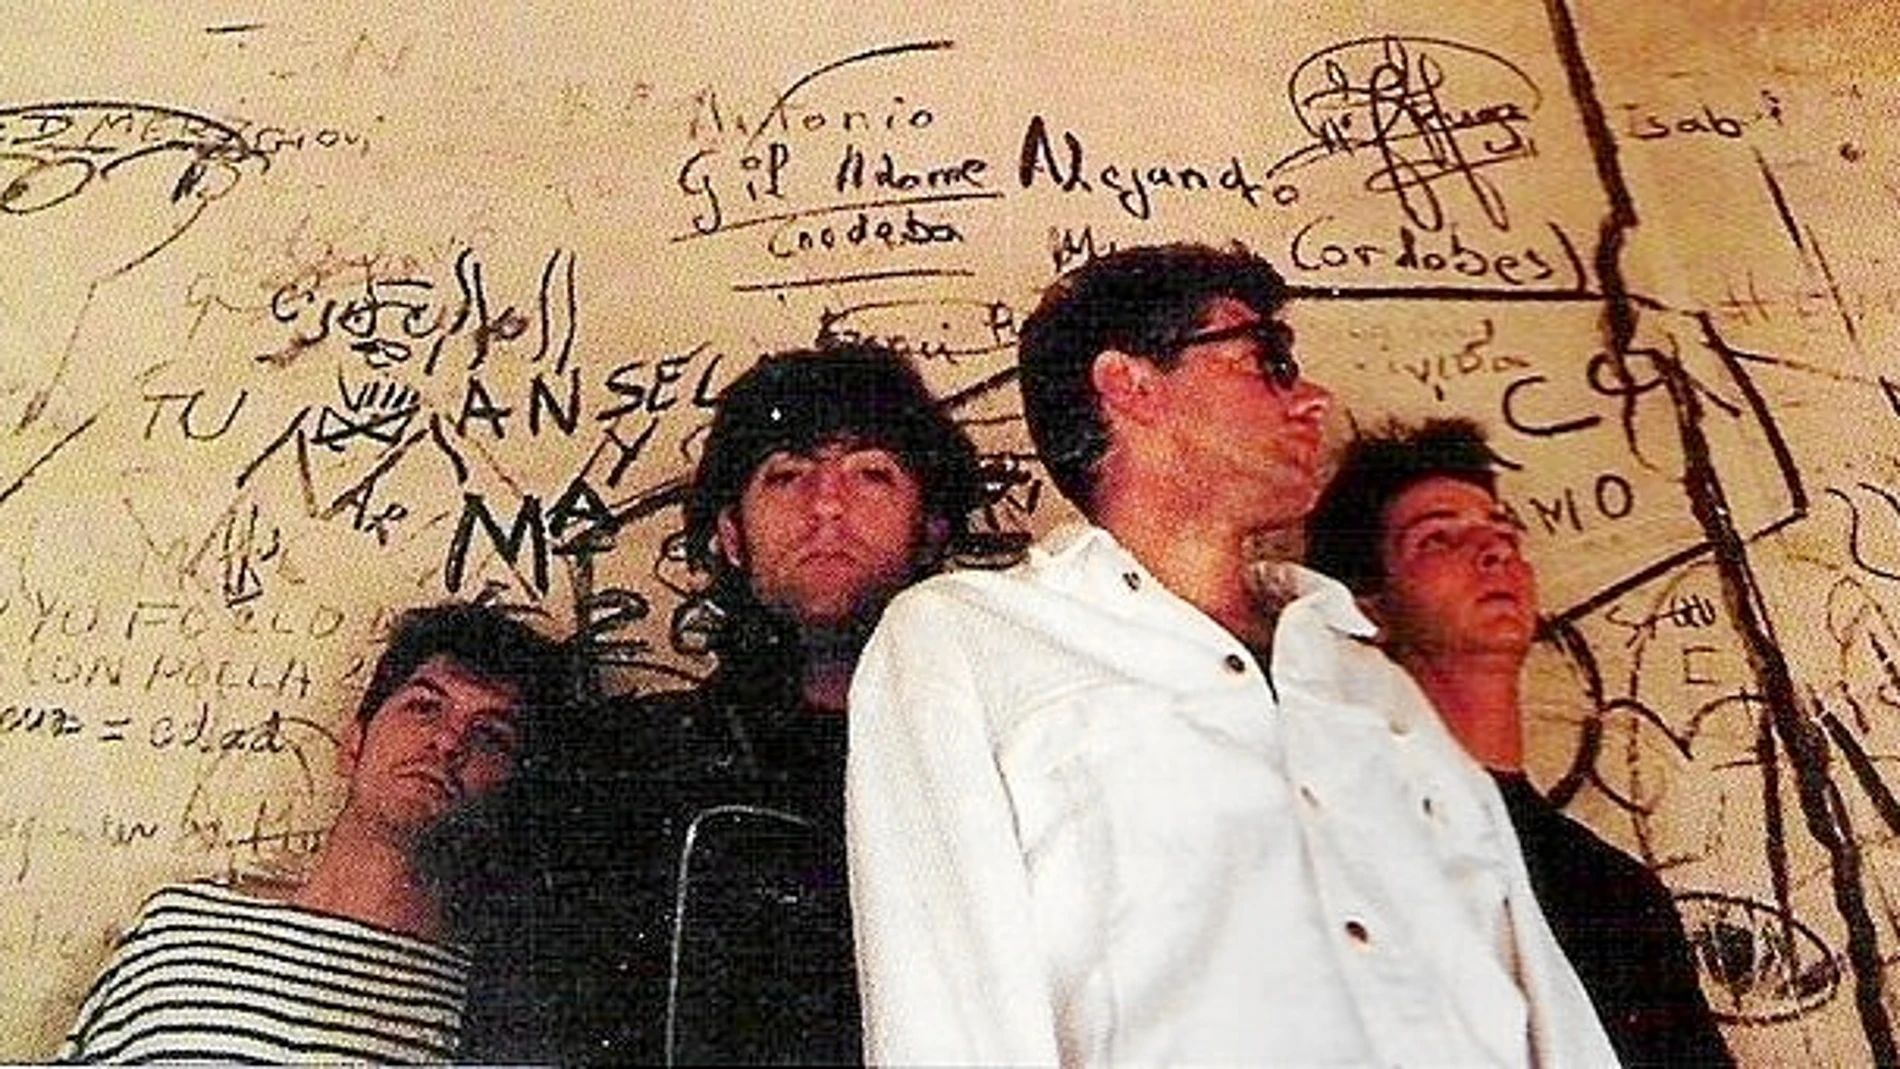 LA IMAGEN es de la formación original de la banda, allá por principios de los 90. Son:Juan Codorniu, Erik Jiménez, Miguel Ángel Rodríguez Pareja y Antonio Arias.